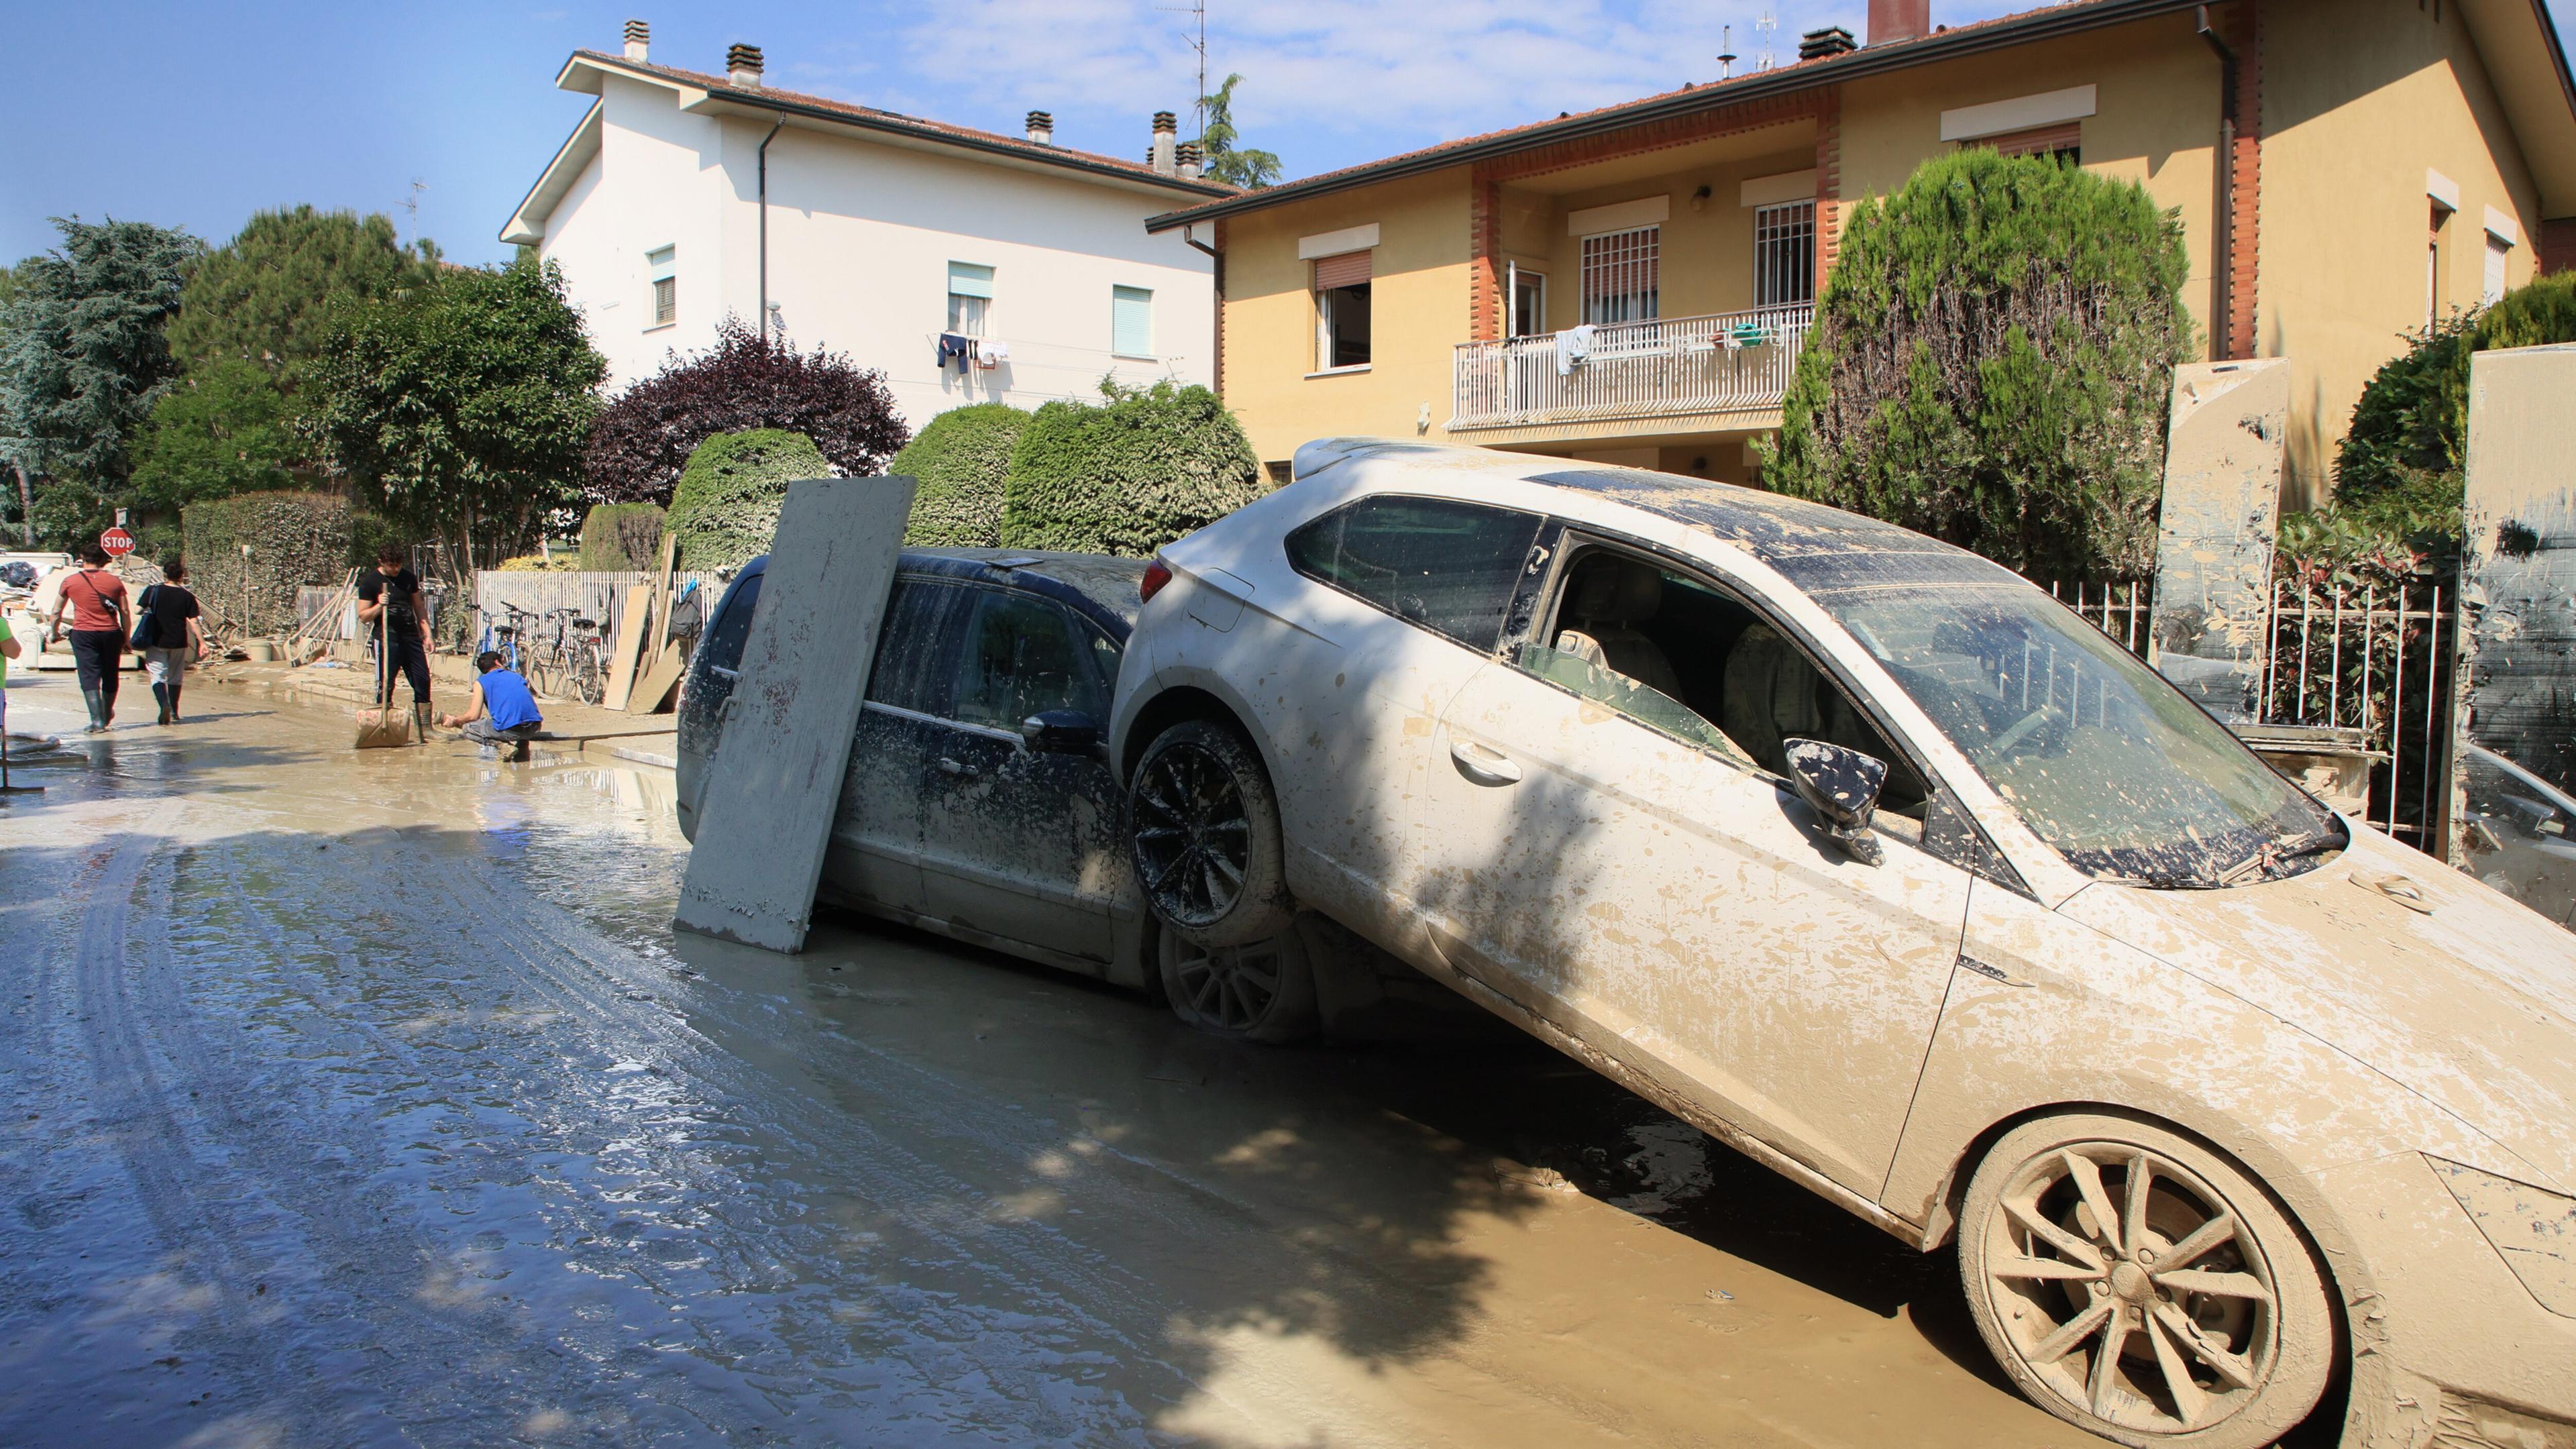 Menschen beseitigen Schutt und Schlamm von der Straße, der durch das Hochwasser angespült wurde, während neben ihnen durch das Hochwasser beschädigte Autos zu sehen sind.